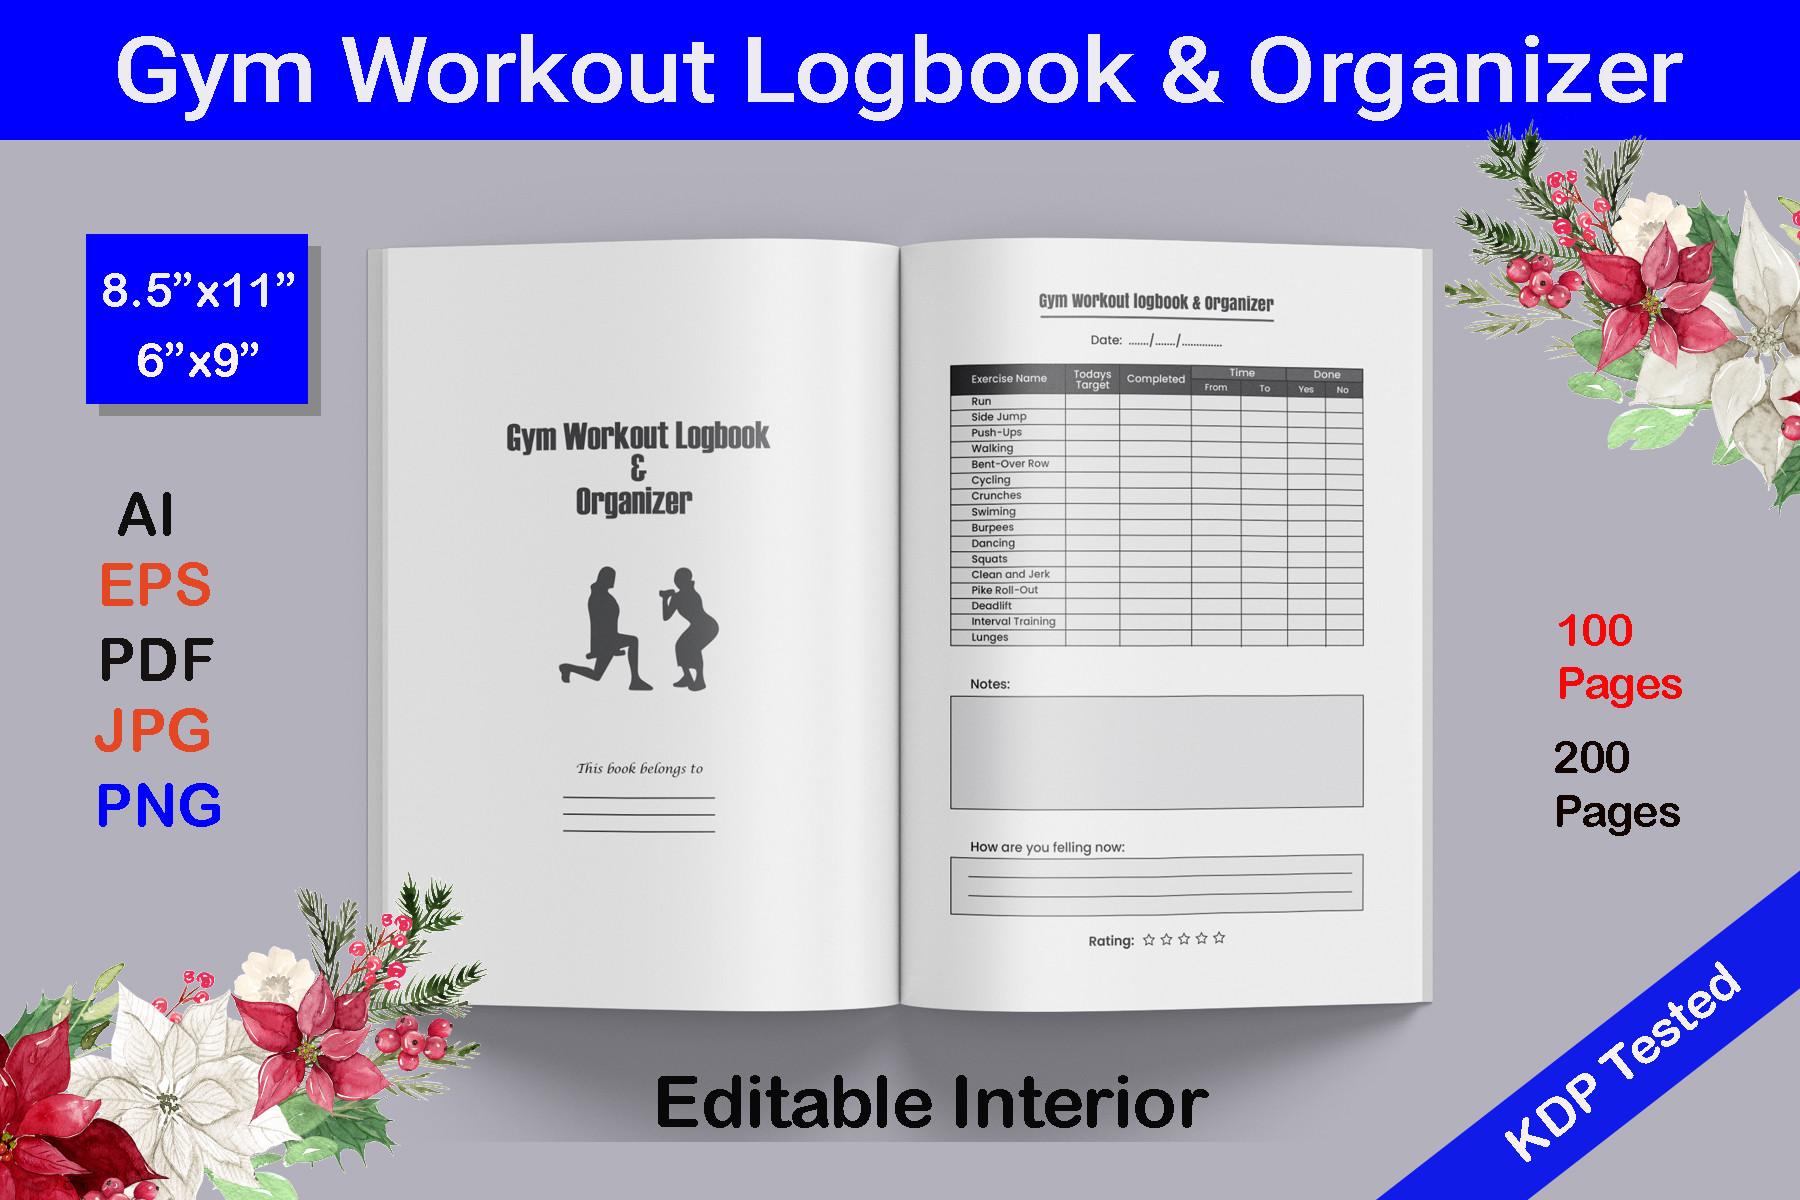 Gym Workout Logbook & Organizer Interior